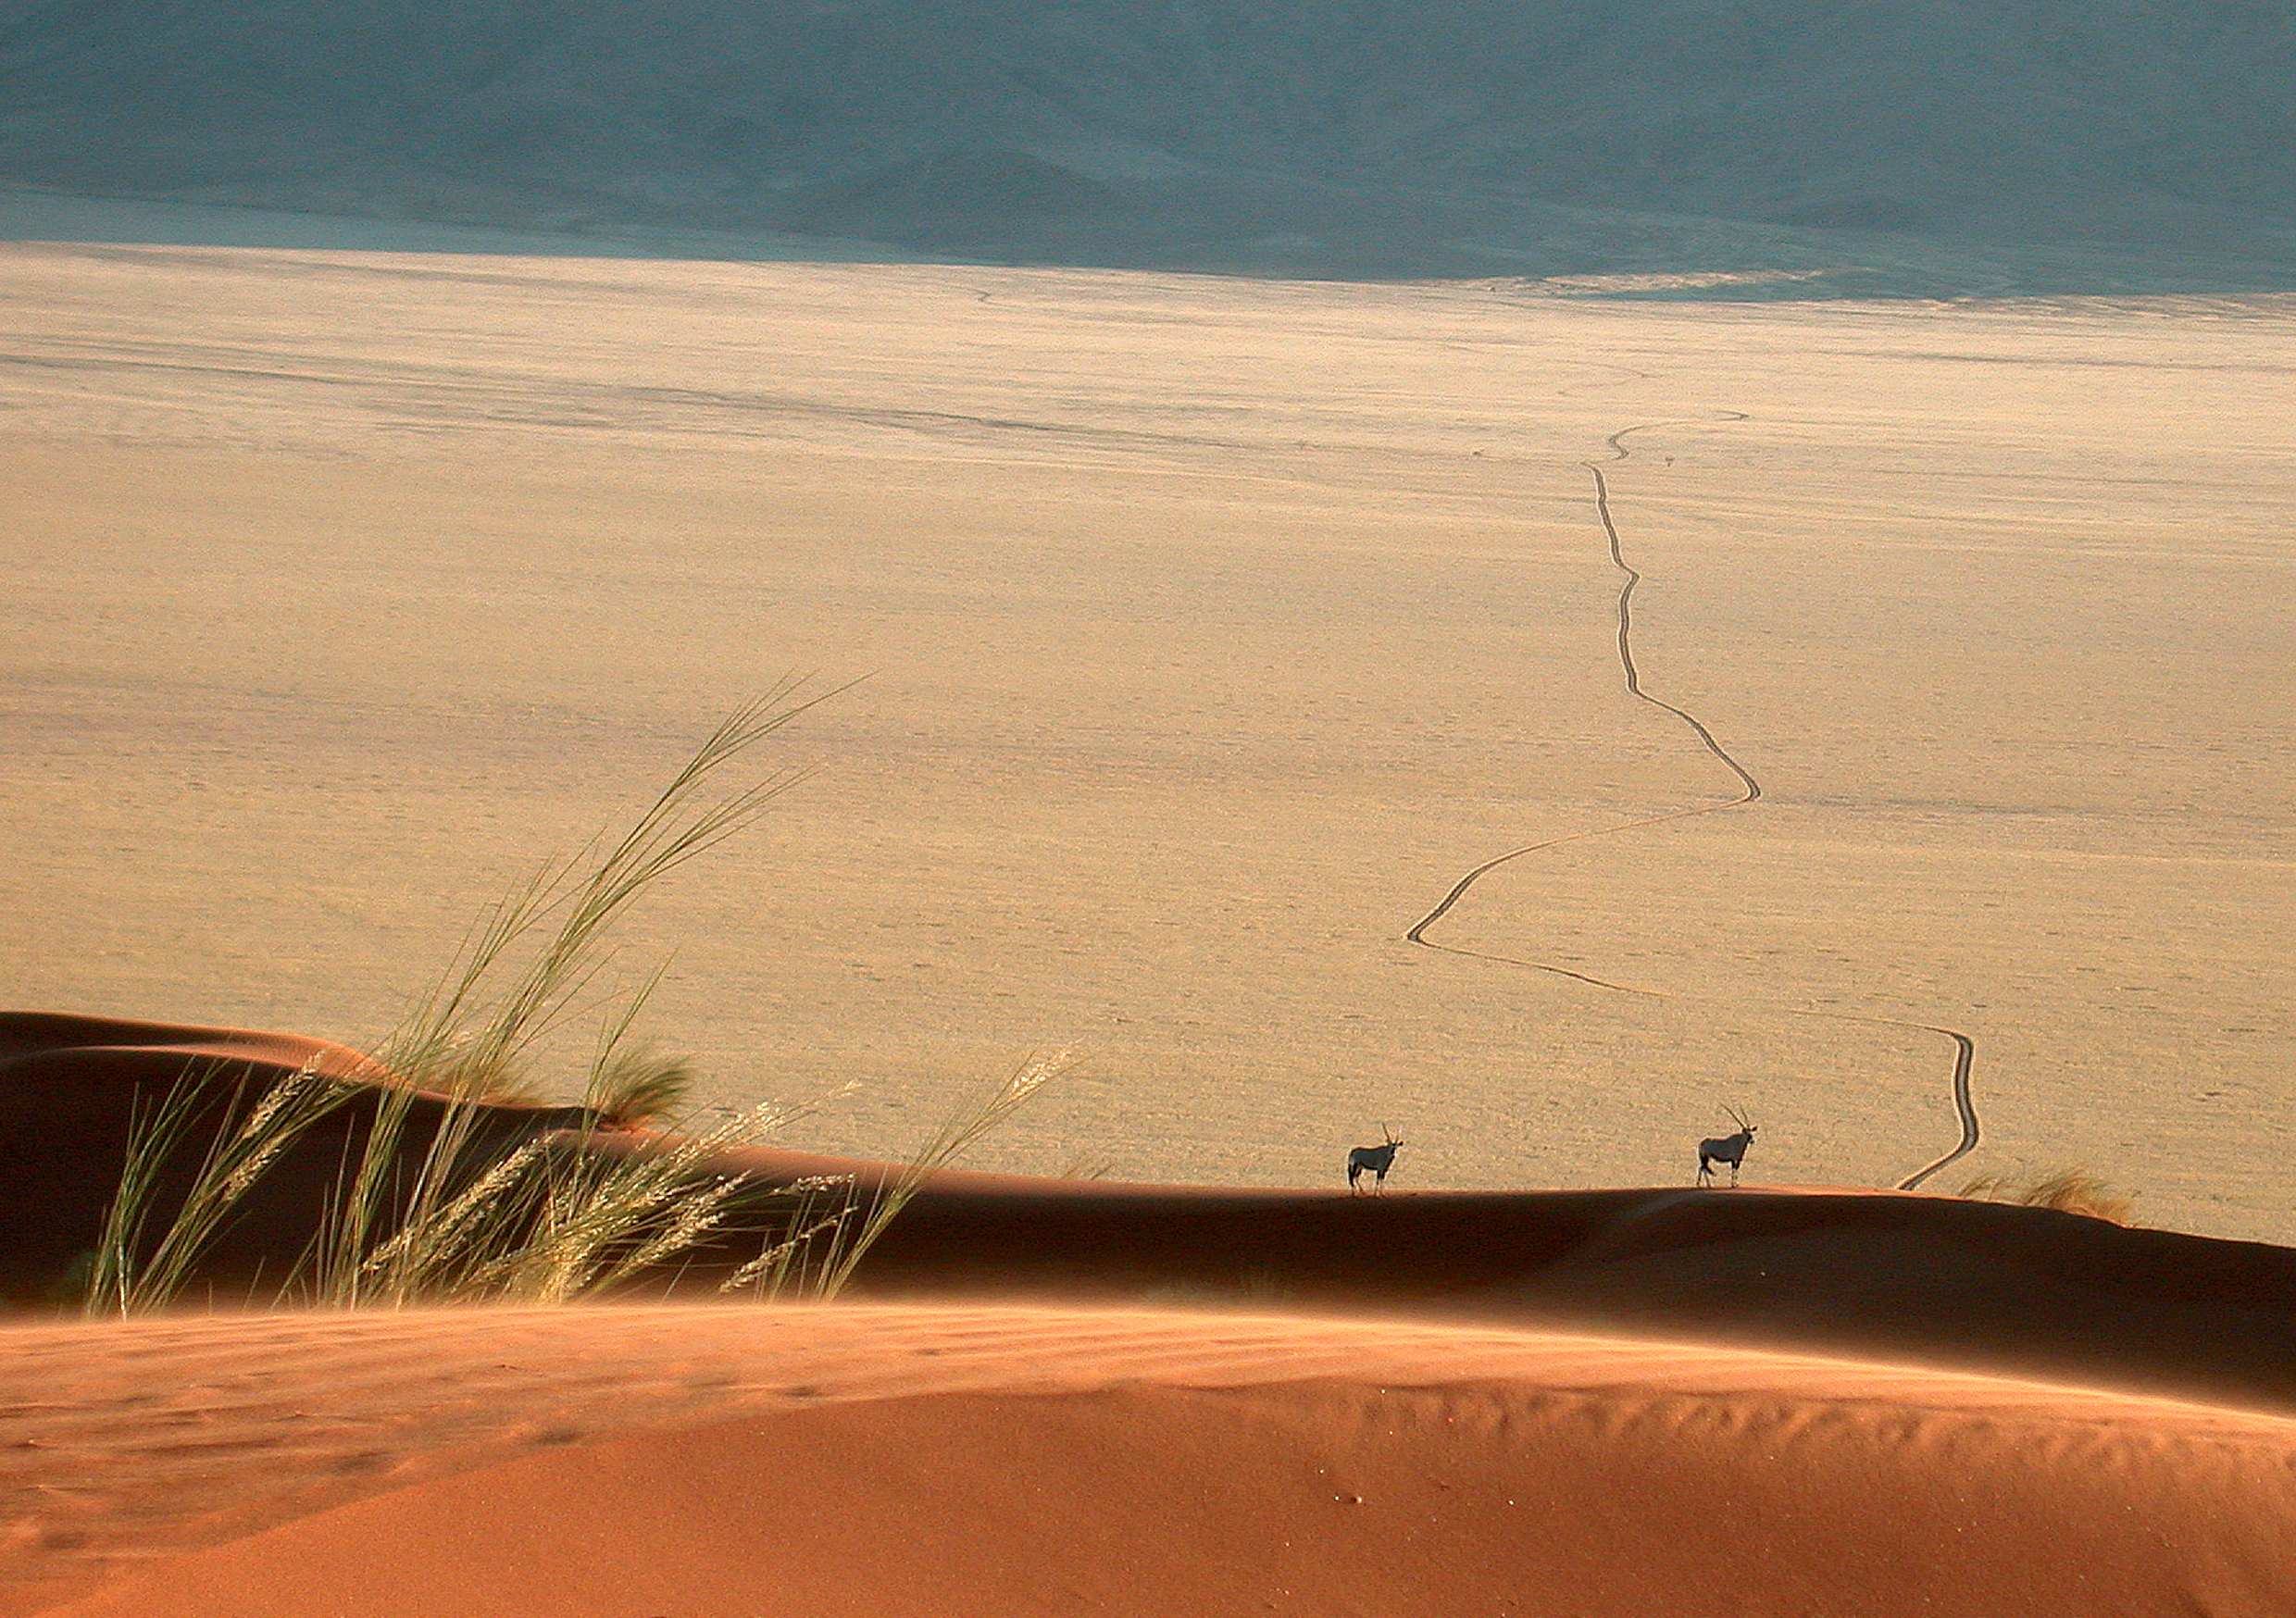 Dune Camp